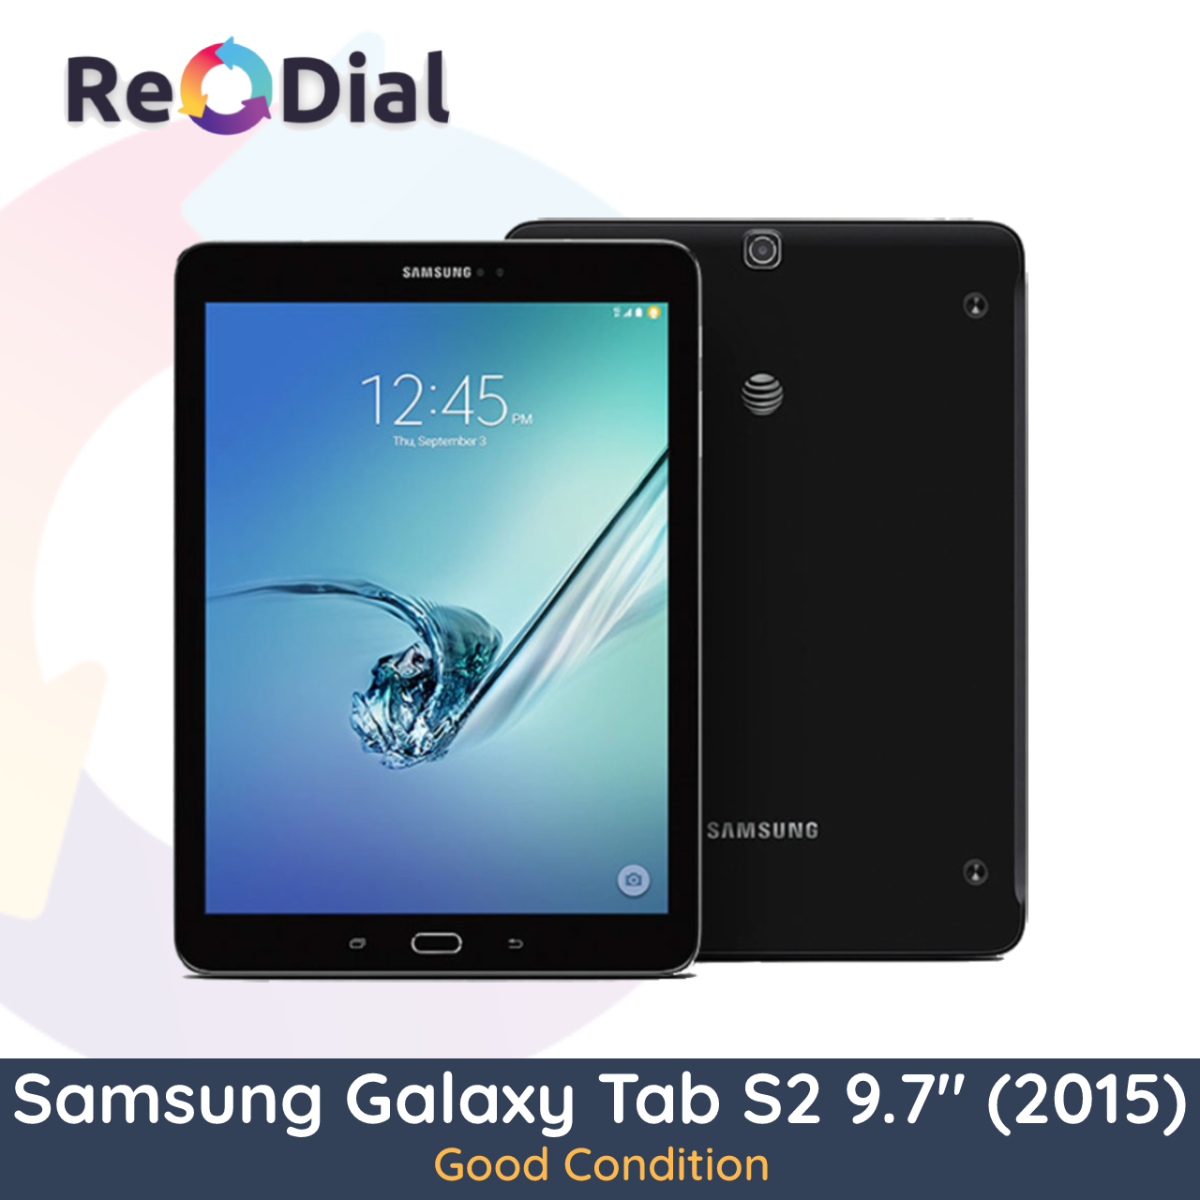 Samsung Galaxy Tab S2 9.7" (T815Y / 2015) WiFi + Cellular - Good Condition